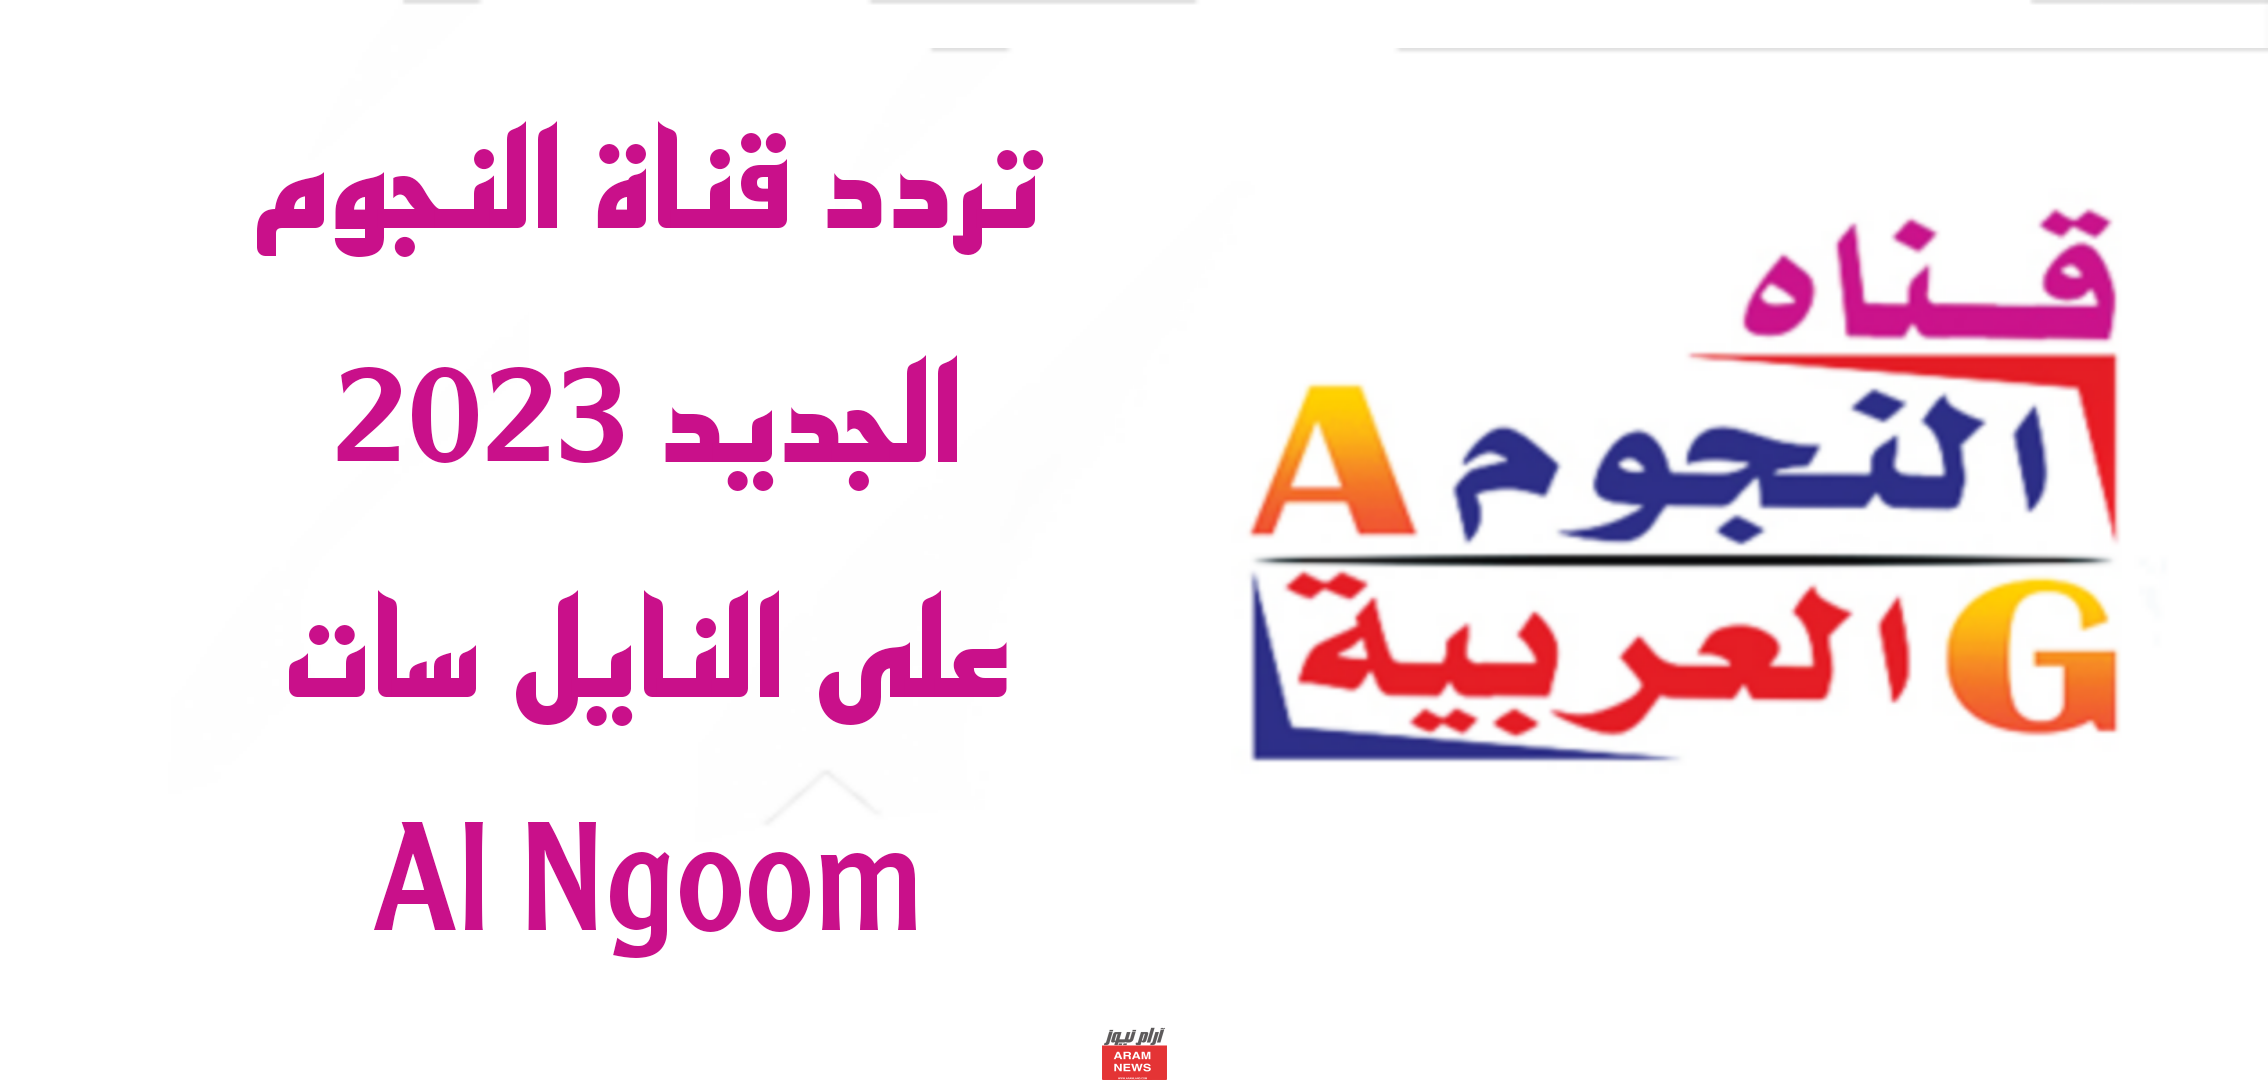 تردد قناة النجوم الجديد على النايل سات Al Ngoom